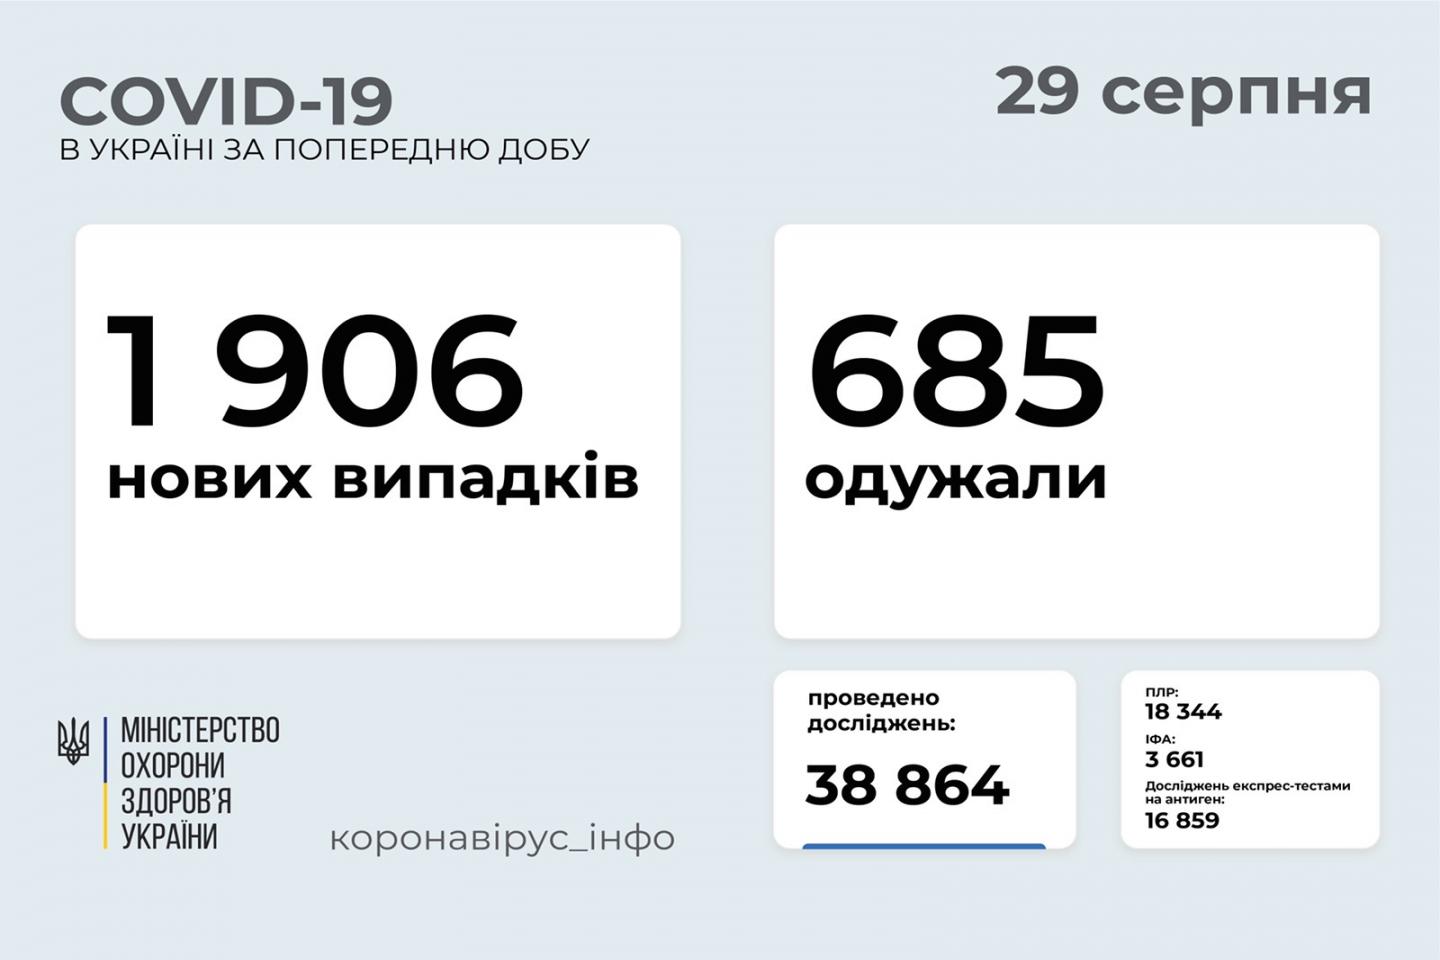 http://dunrada.gov.ua/uploadfile/archive_news/2021/08/29/2021-08-29_5031/images/images-74739.jpeg